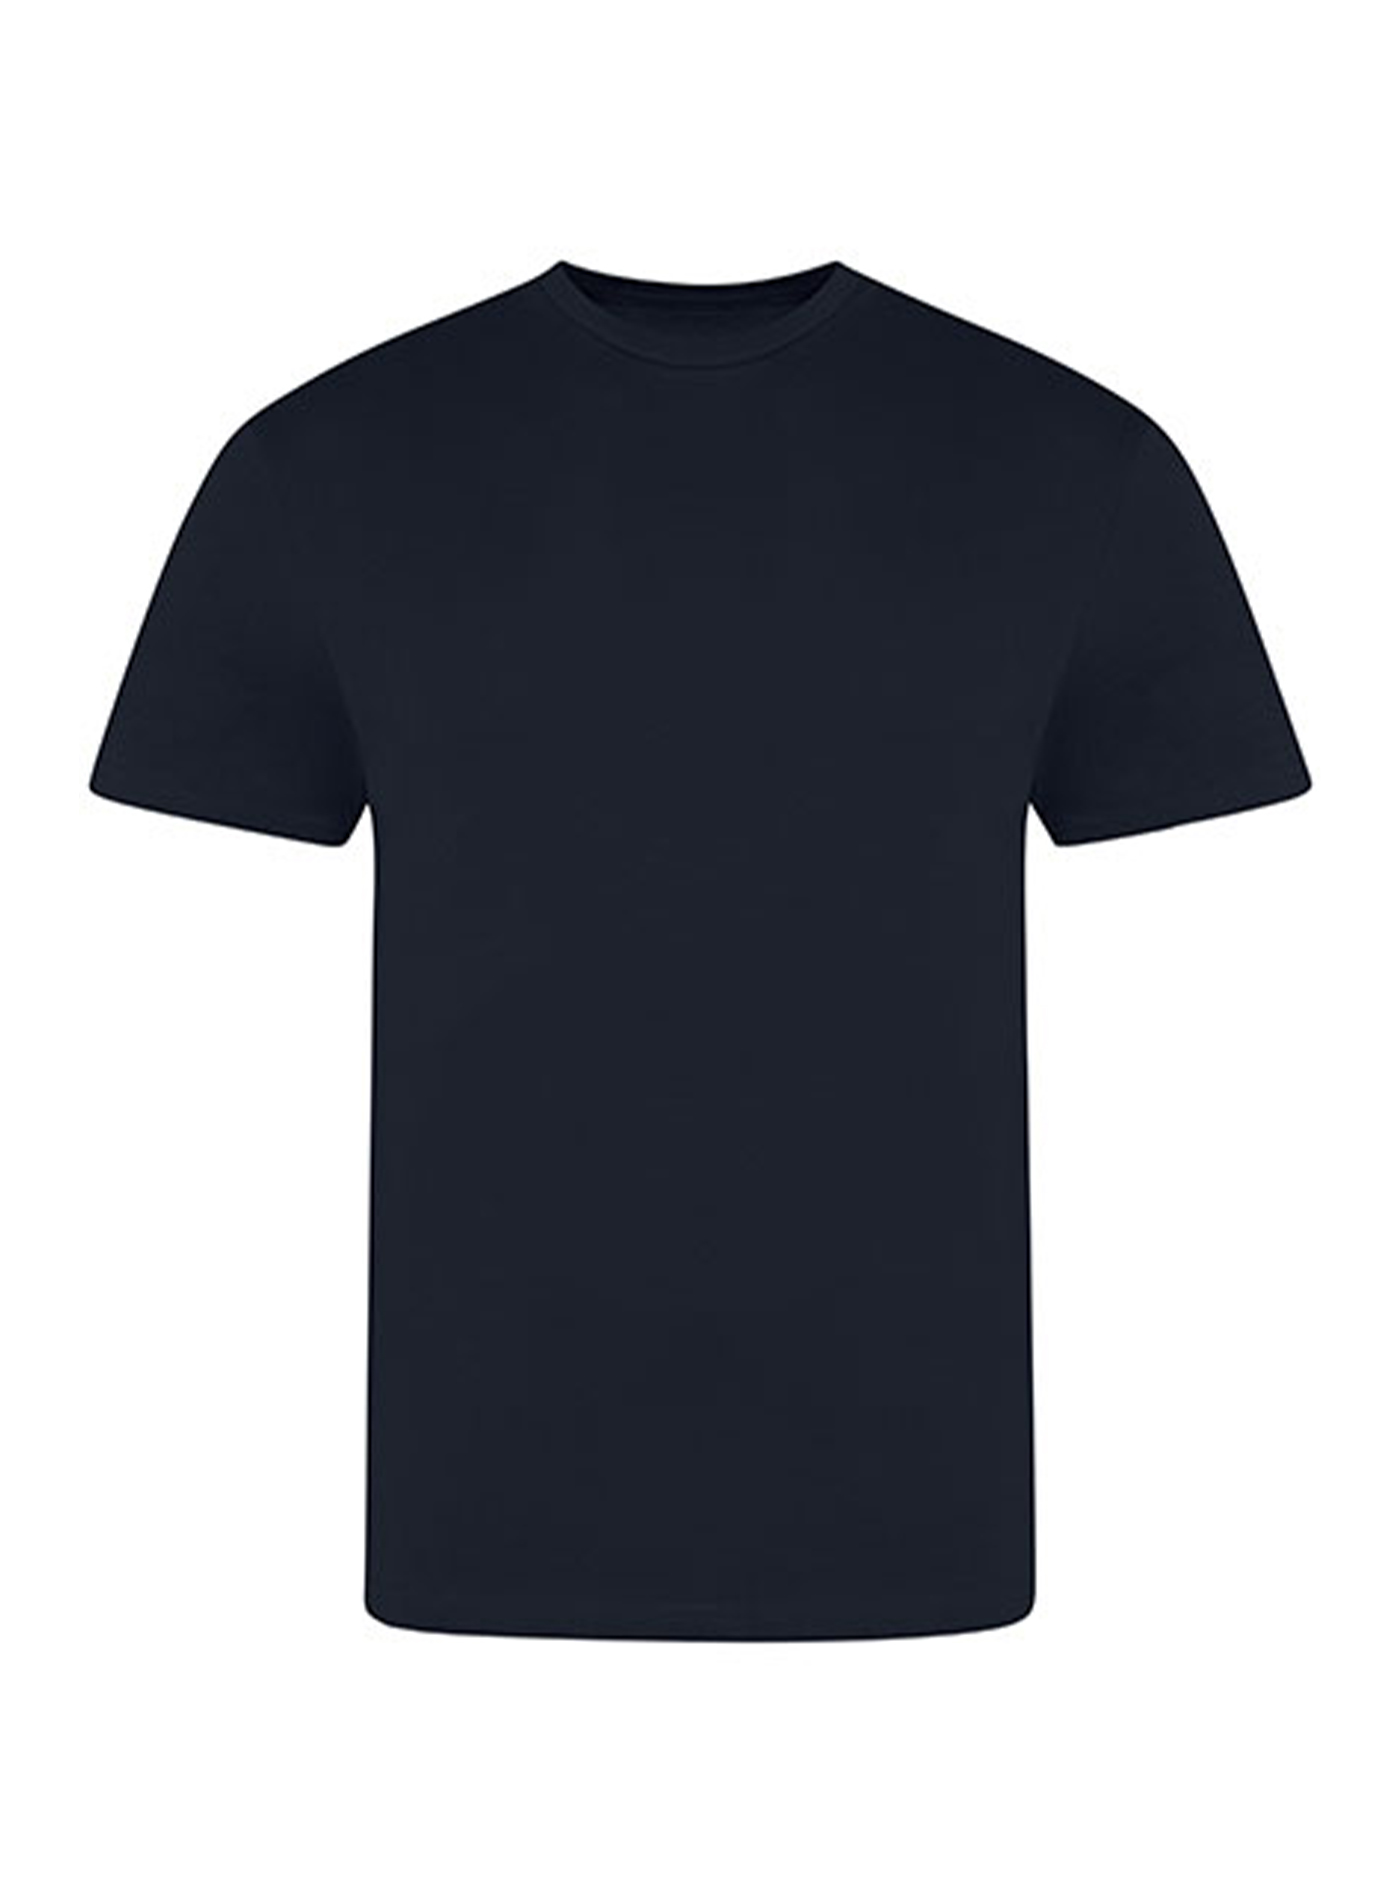 Pánské tričko Just Ts - Námořní modrá XXL